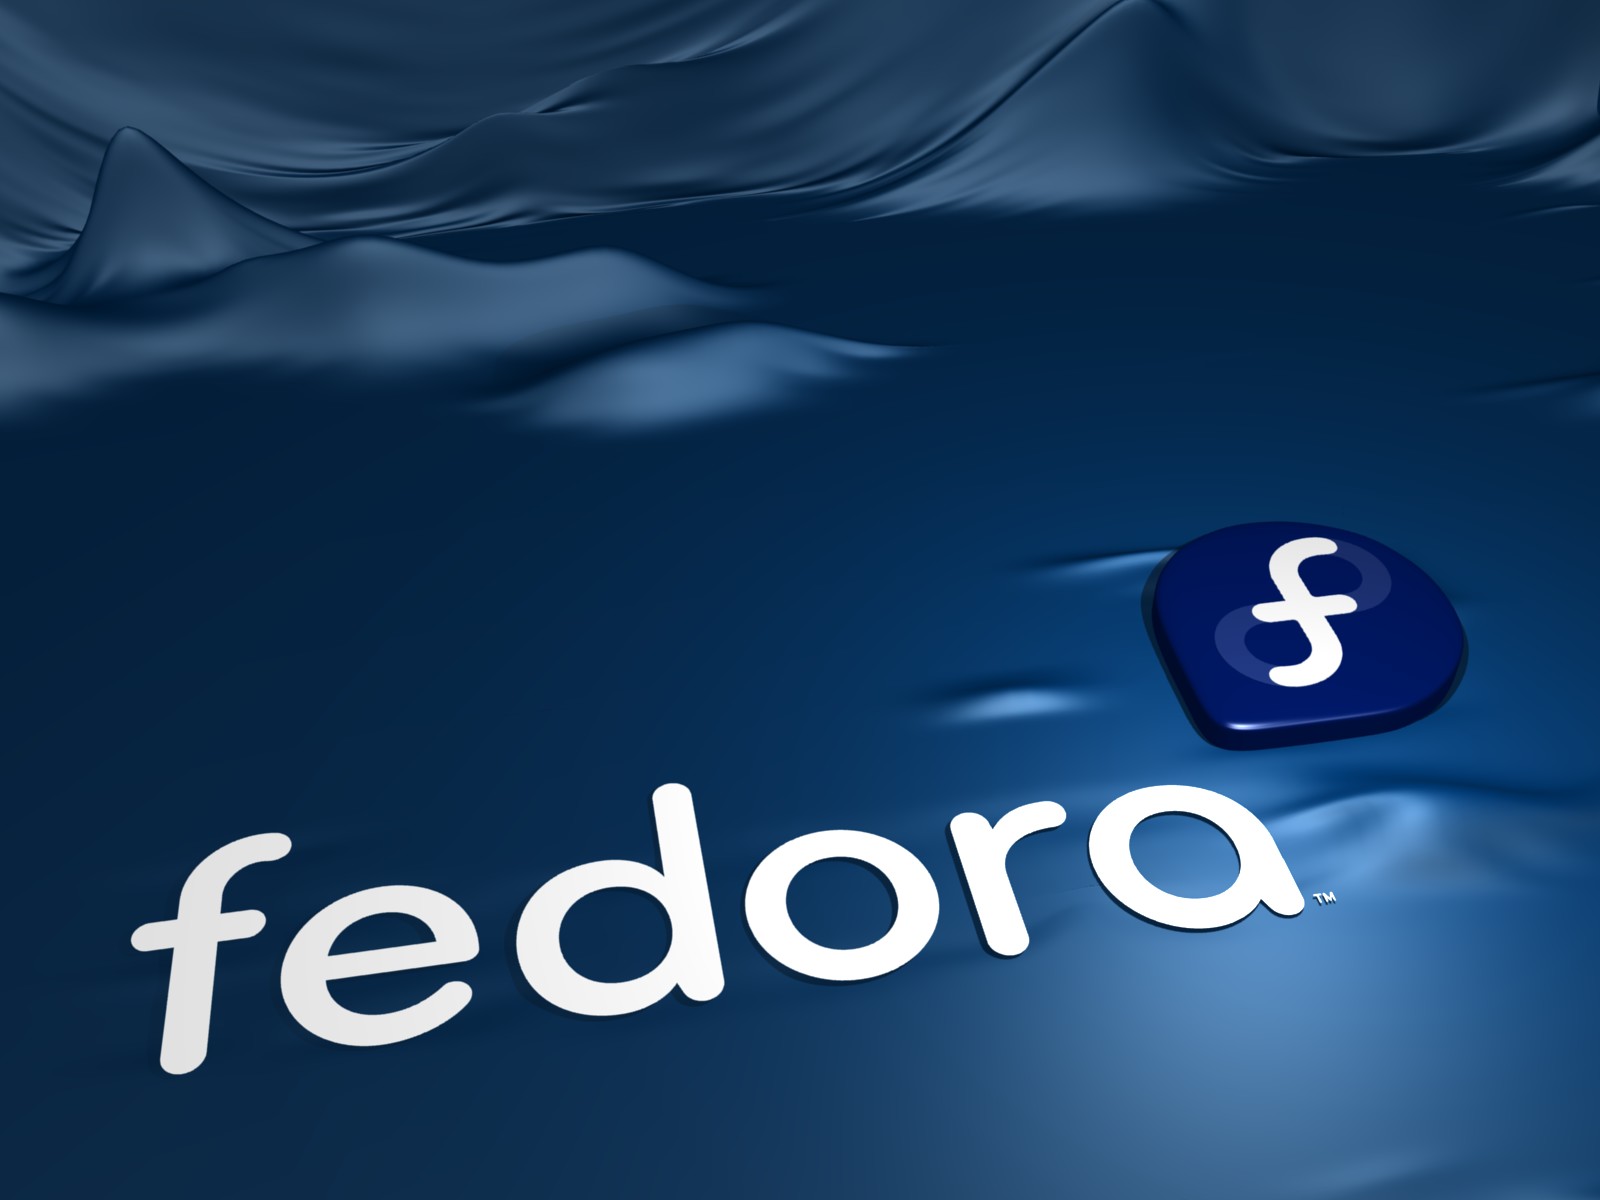 Linux Libre Fedora